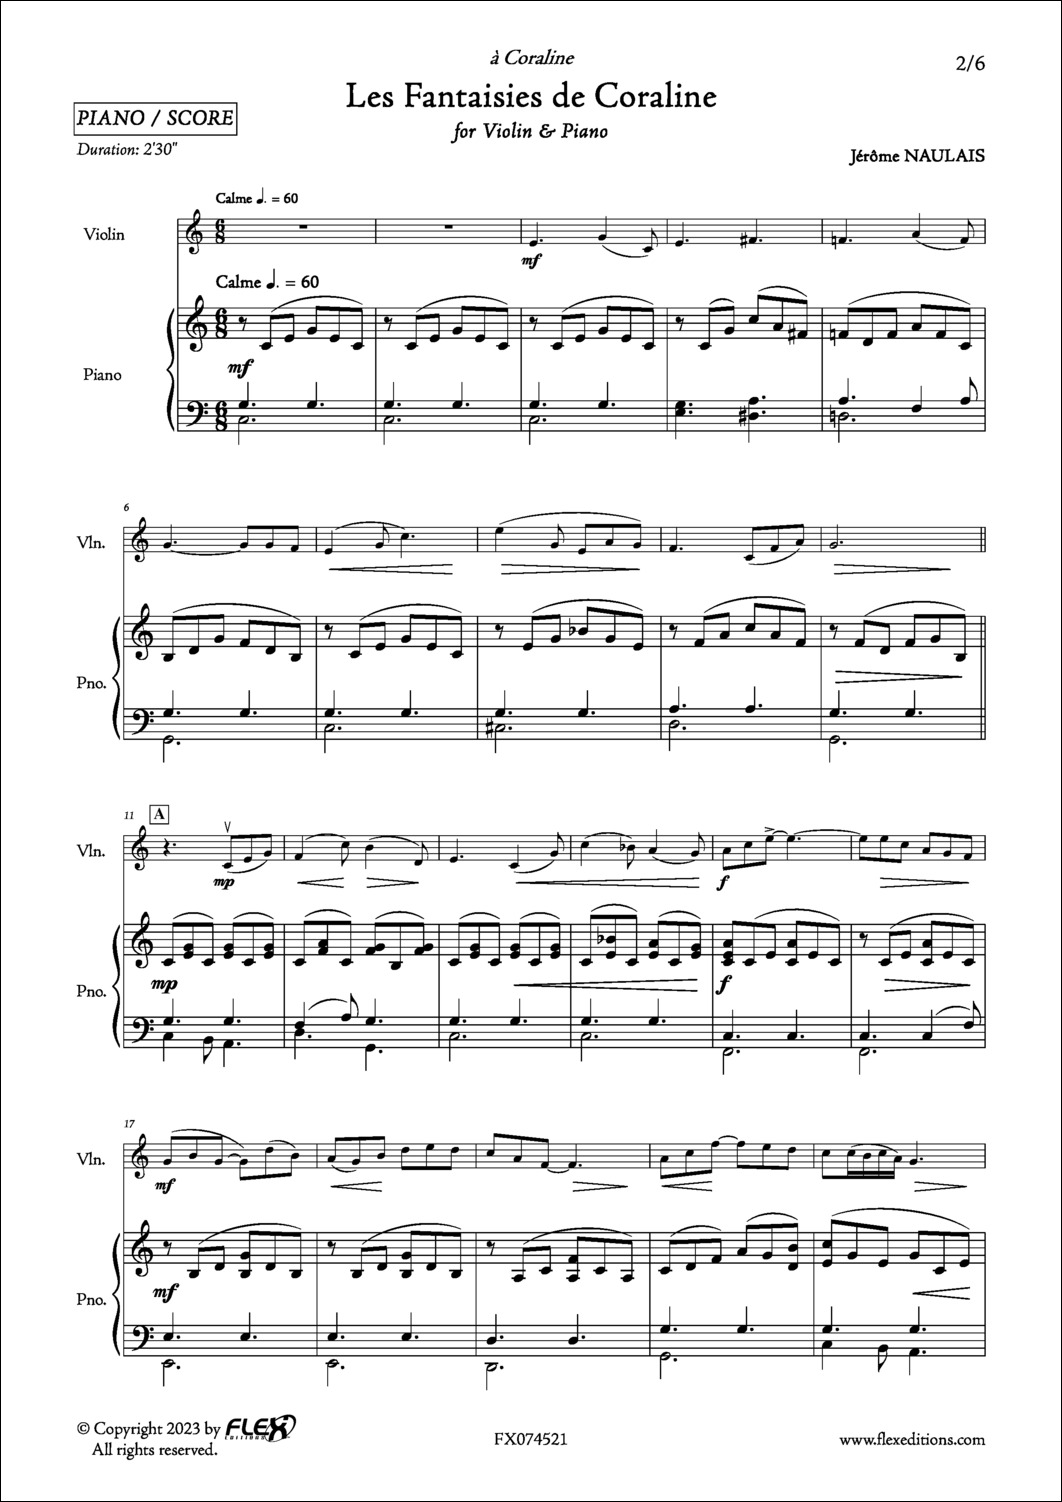 Les Fantaisies de Coraline - J. NAULAIS - <font color=#666666>Violin and Piano</font>